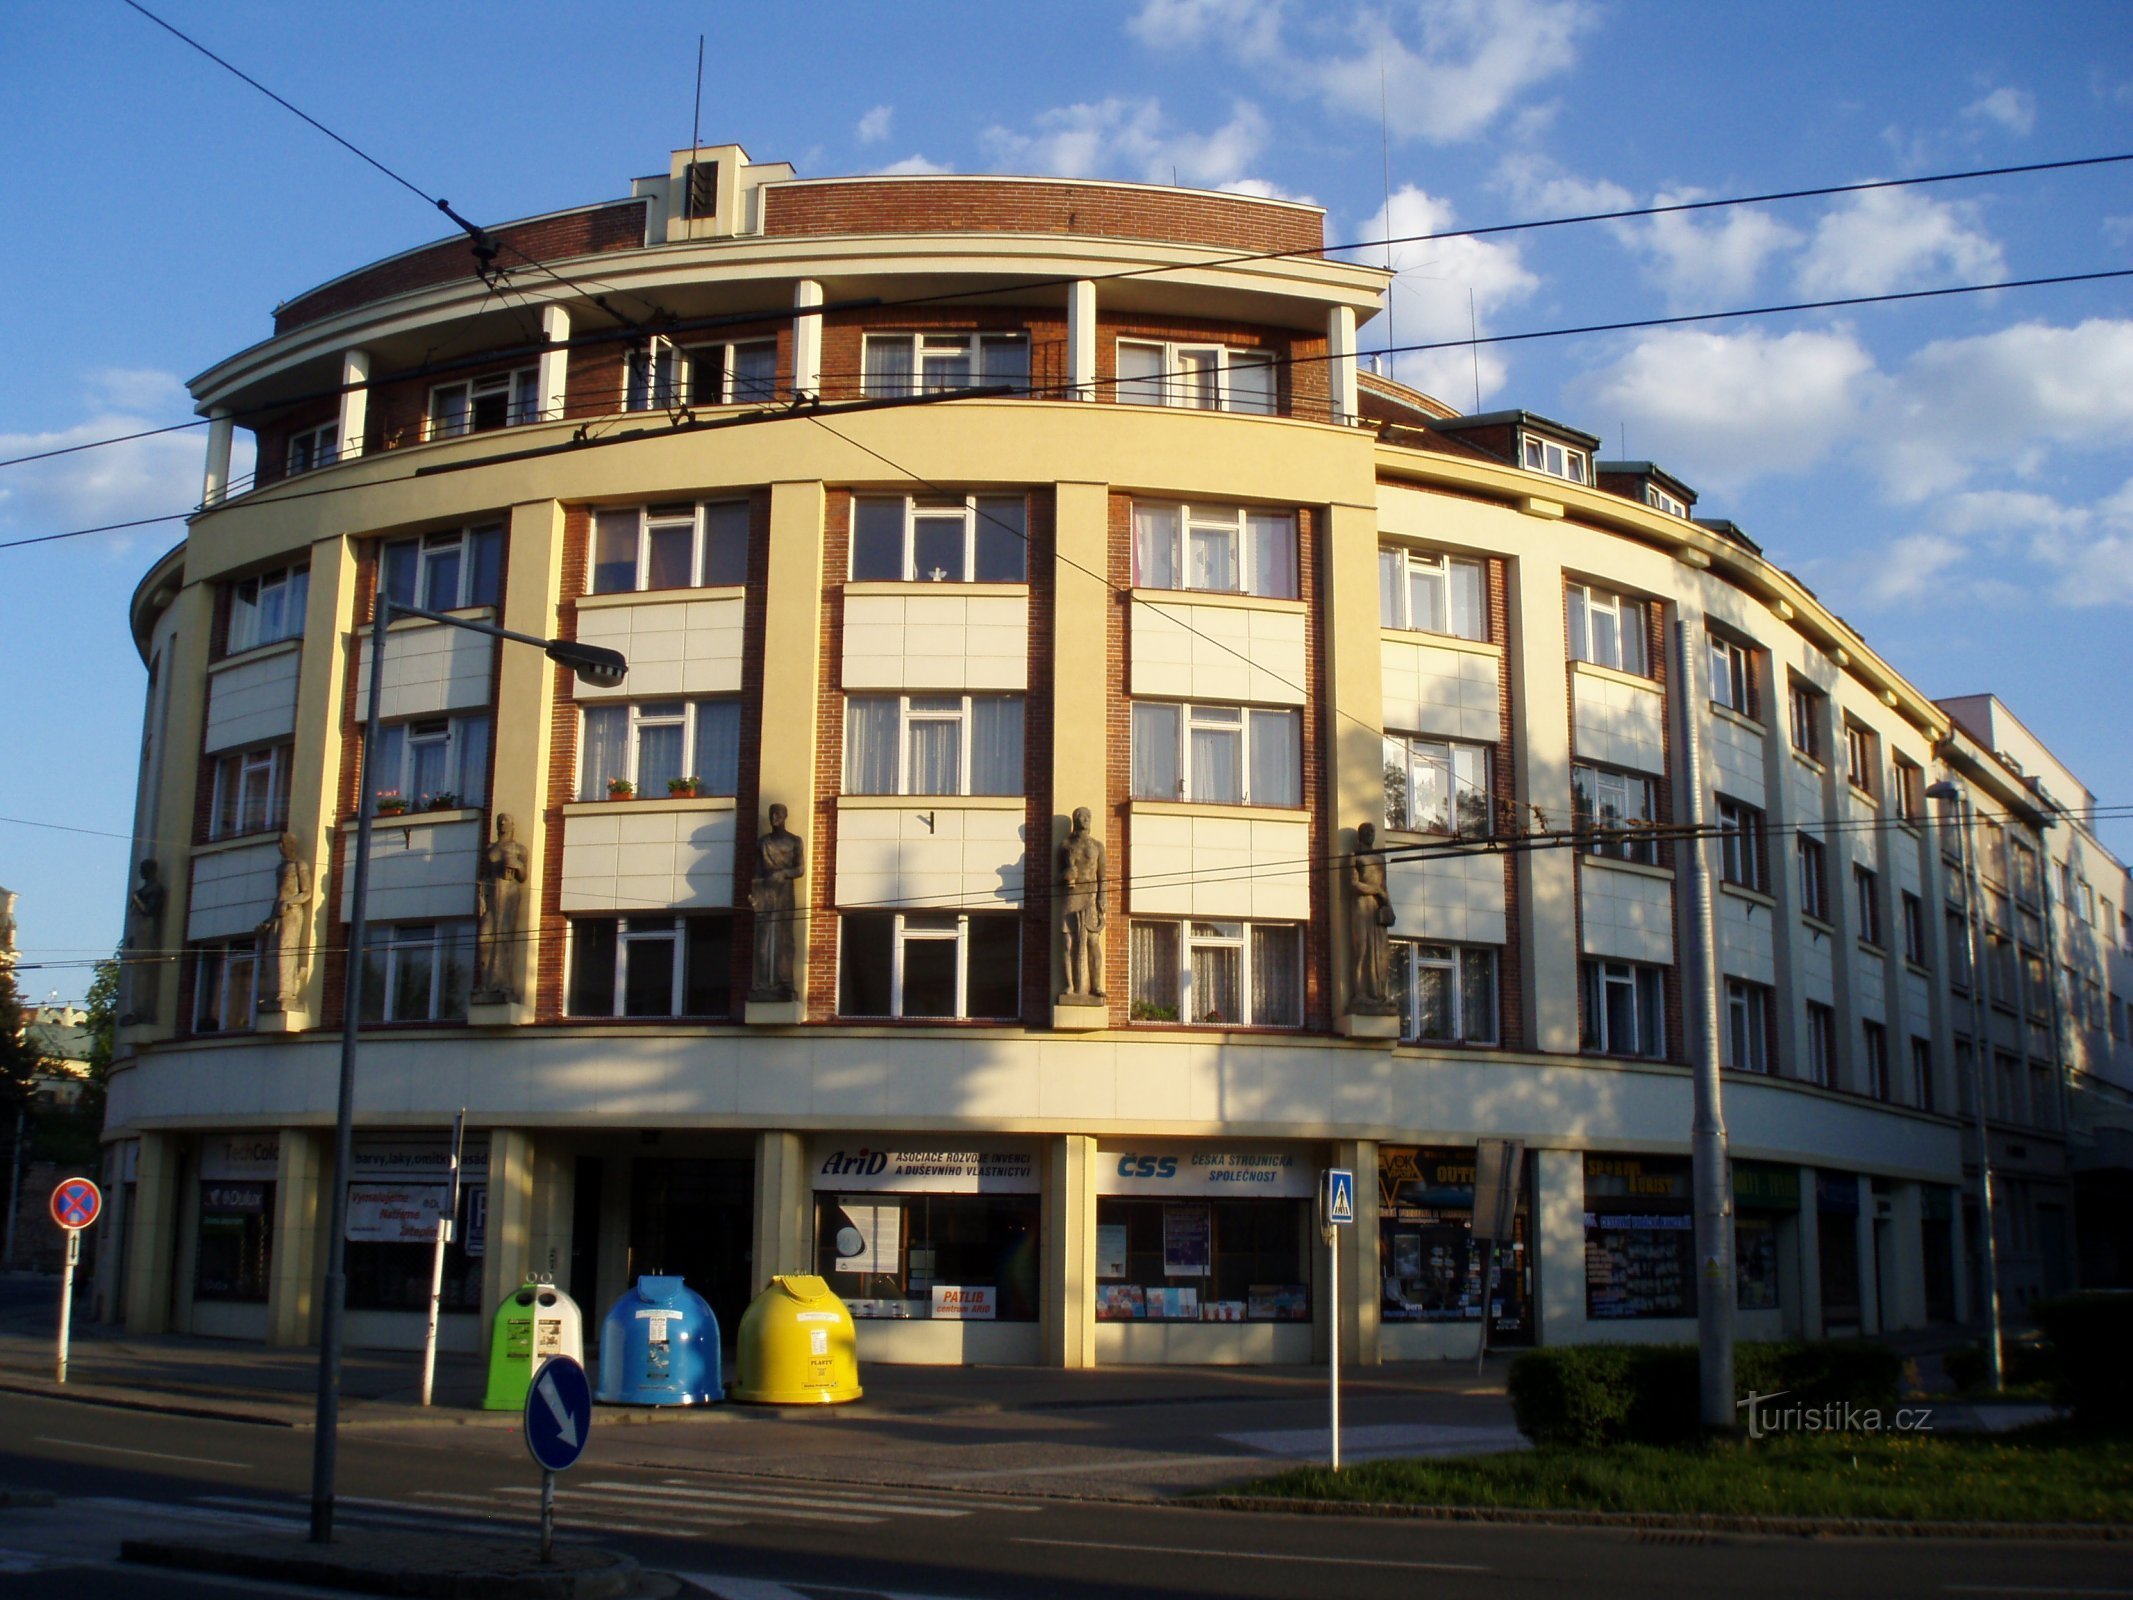 Công ty bảo hiểm tương hỗ đầu tiên của Séc (Hradec Králové, ngày 1.5.2012 tháng XNUMX năm XNUMX)